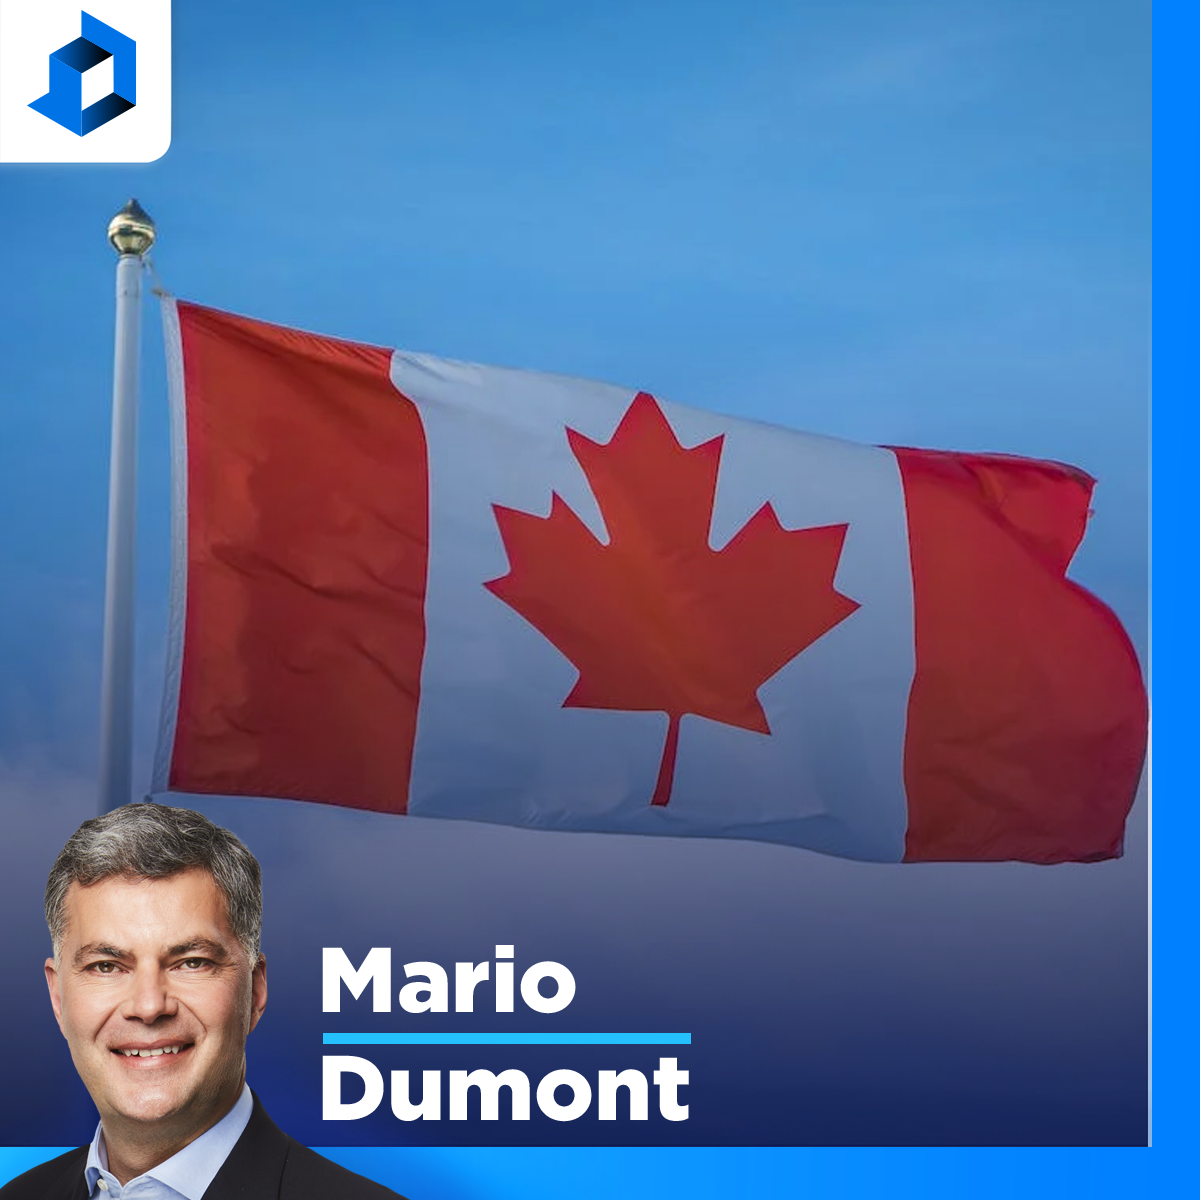 Le gouvernement Trudeau est incapable de discipline budgétaire, dit Mario Dumont